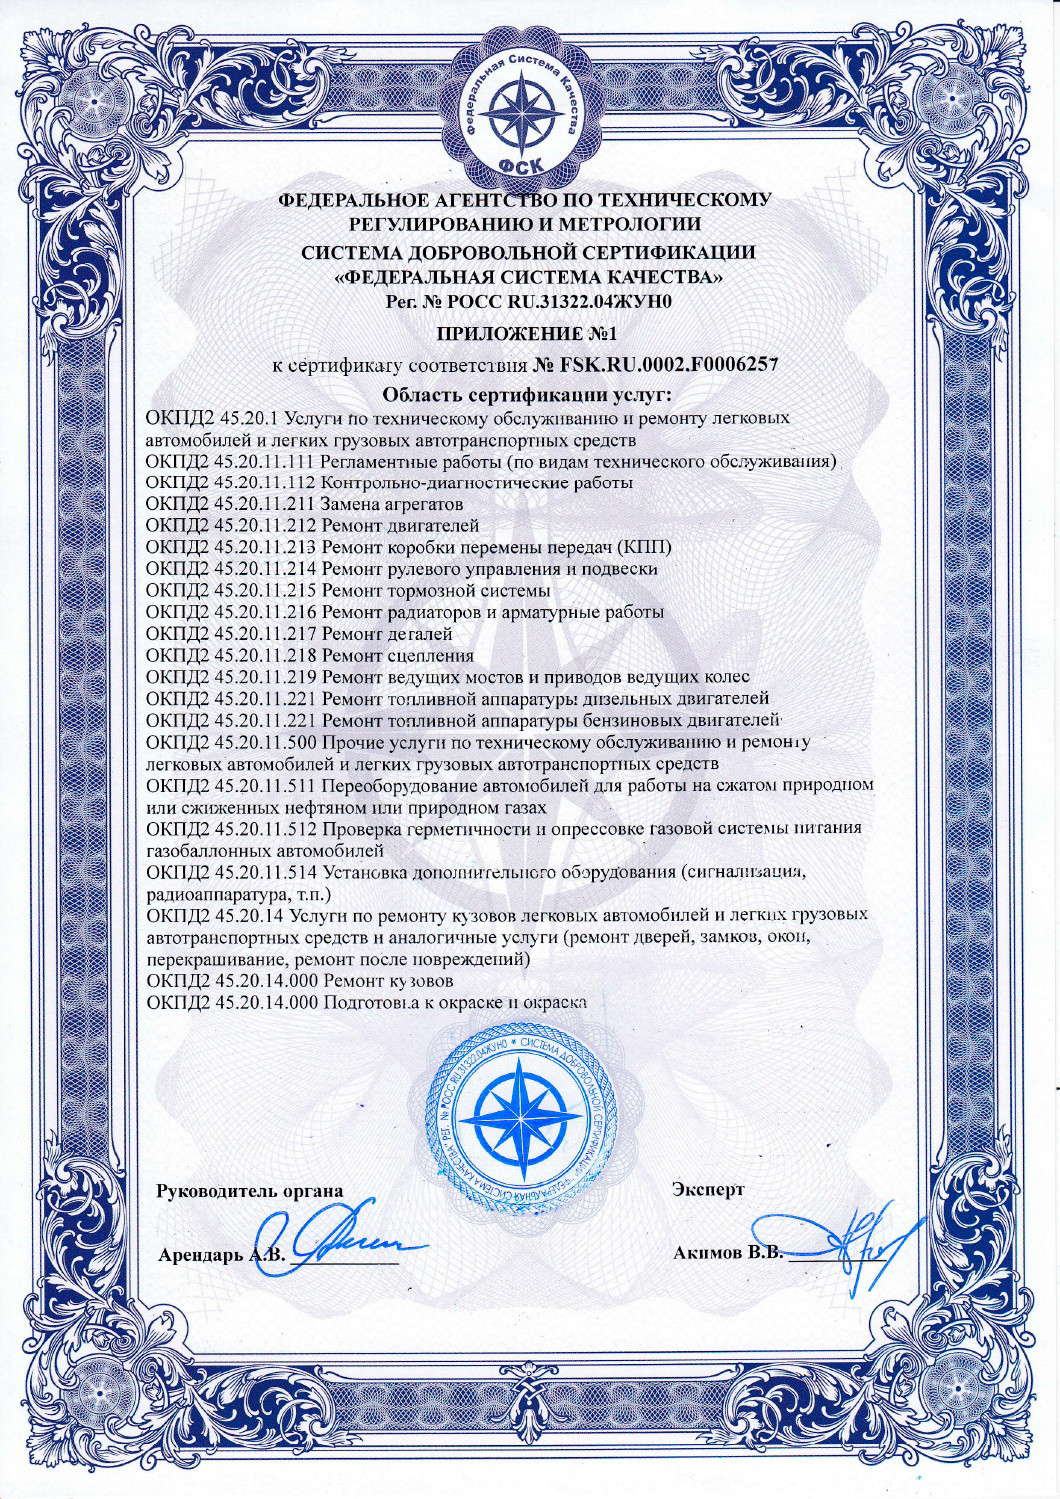 Сертификат соответствия ГБО